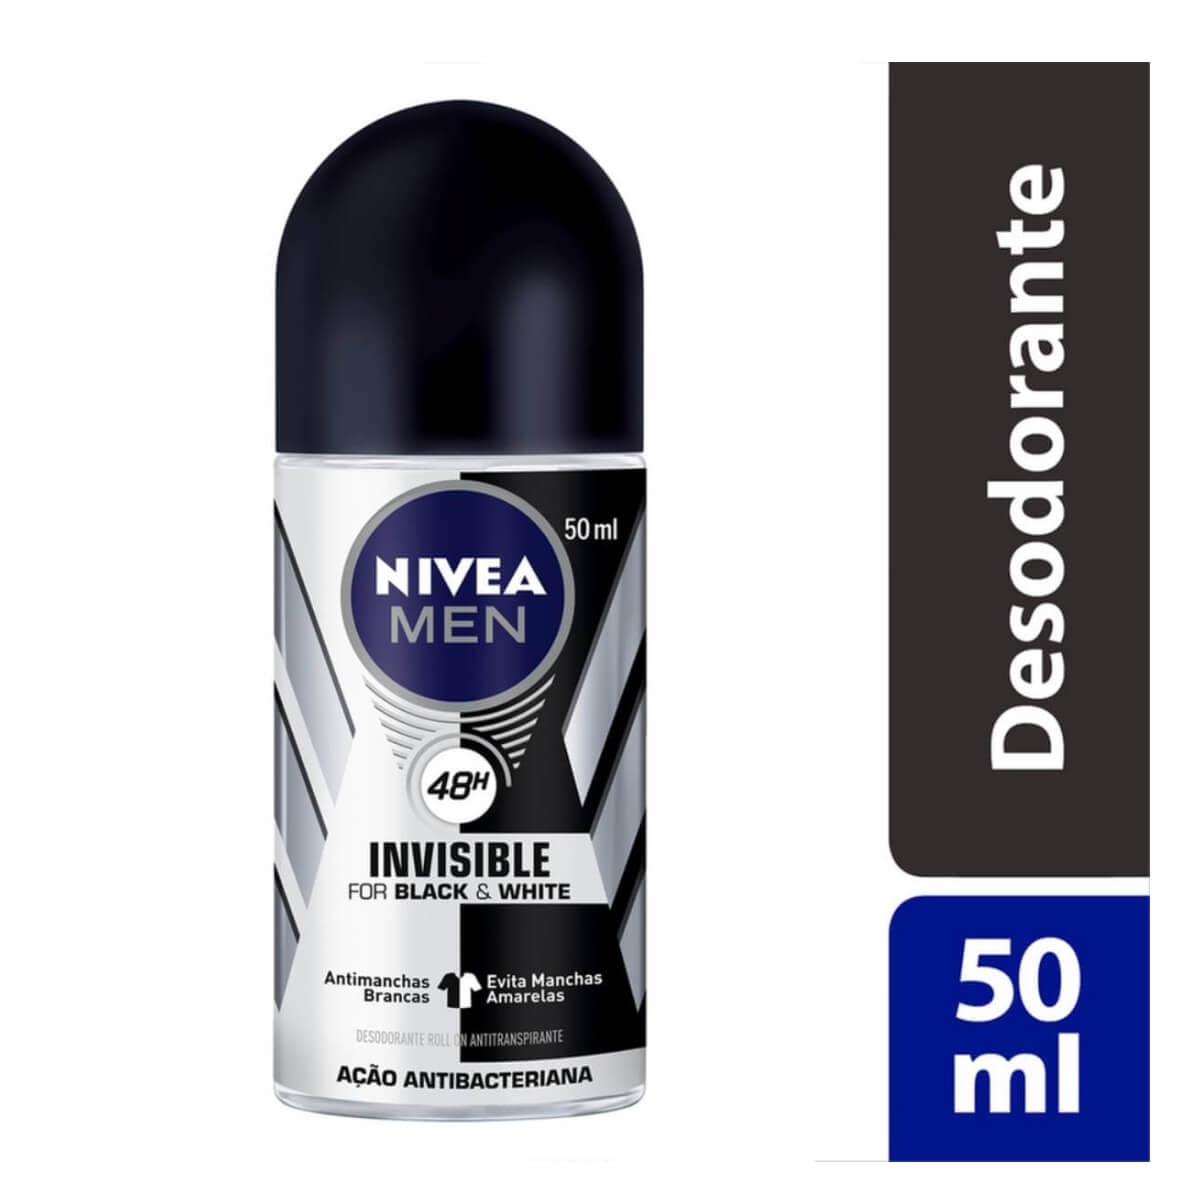 Desodorante Antitranspirante Roll On NIVEA Invisible for Black & White Nivea Men 50ml